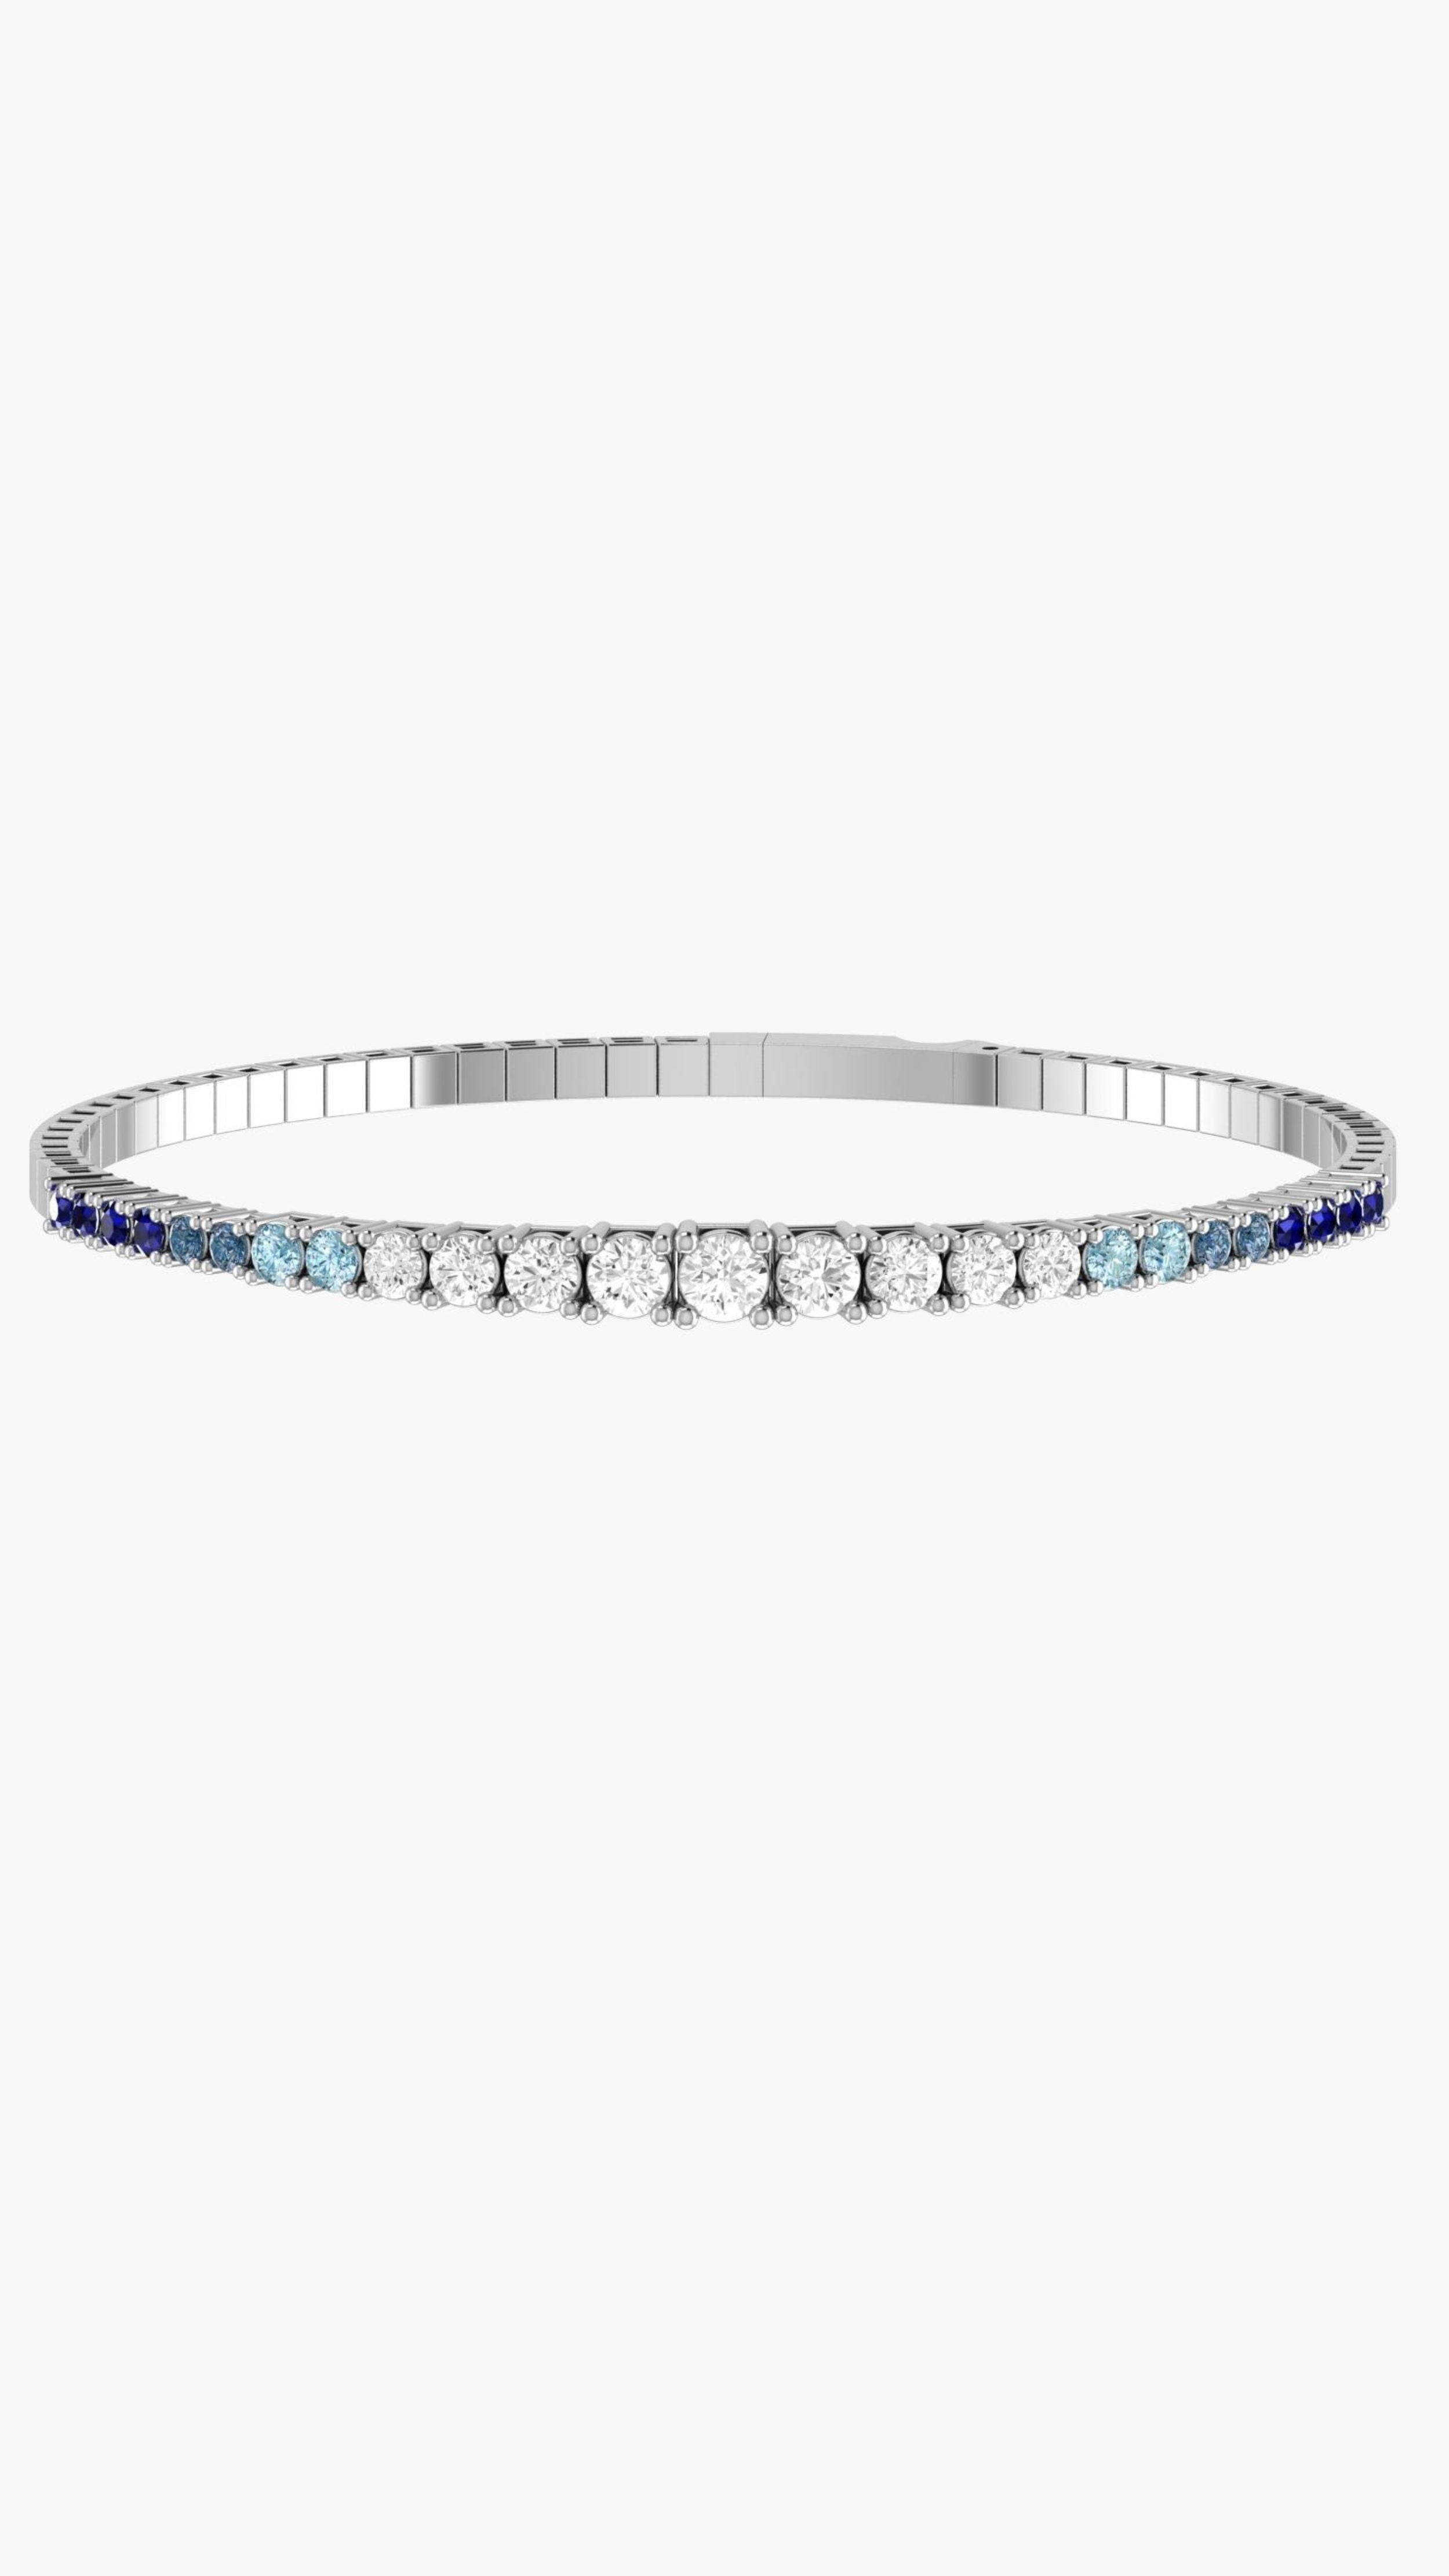 Condé de Diamante Sapphire Degradé Tennis Bracelet. whilte gold flexible tennis bracelet with diamonds and an ombre of blue sapphires. Product photo from the front.